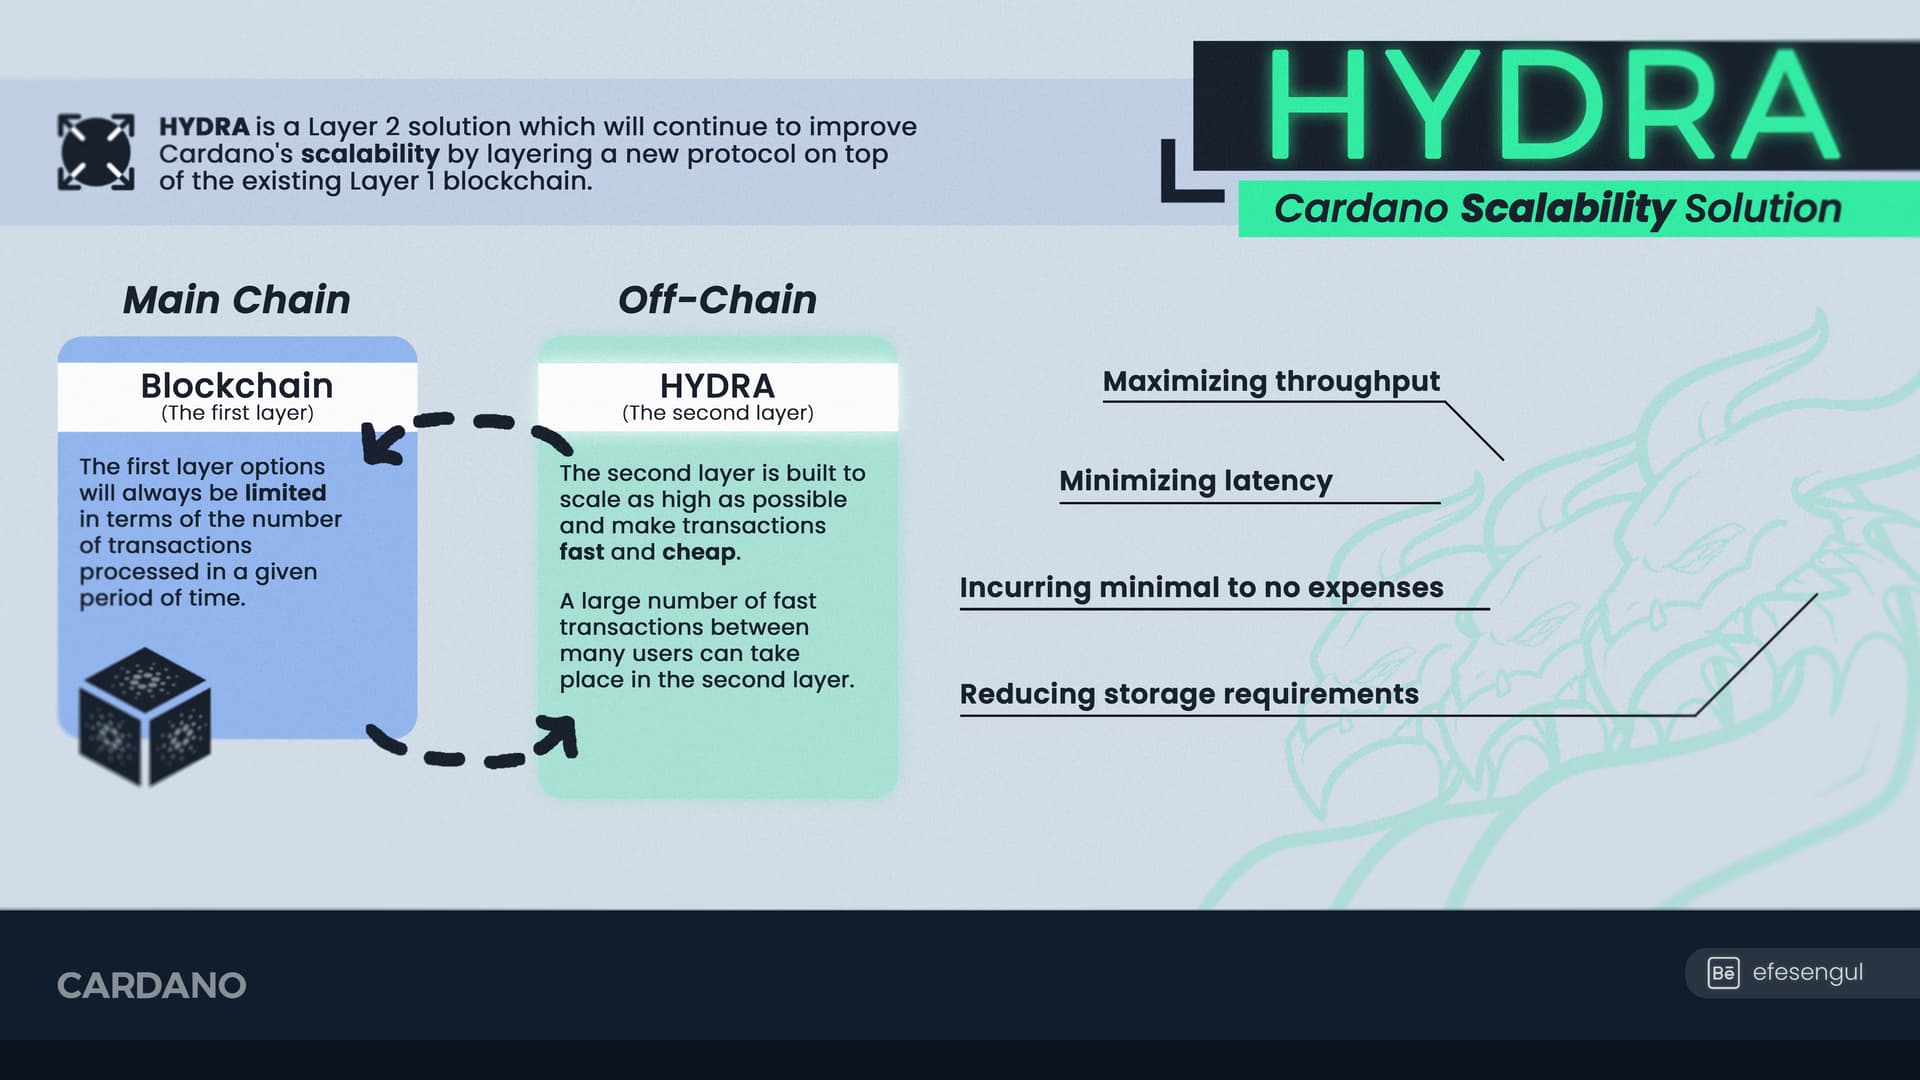 Die Funktionsweise von Hydra als Skalierungslösung für Cardano